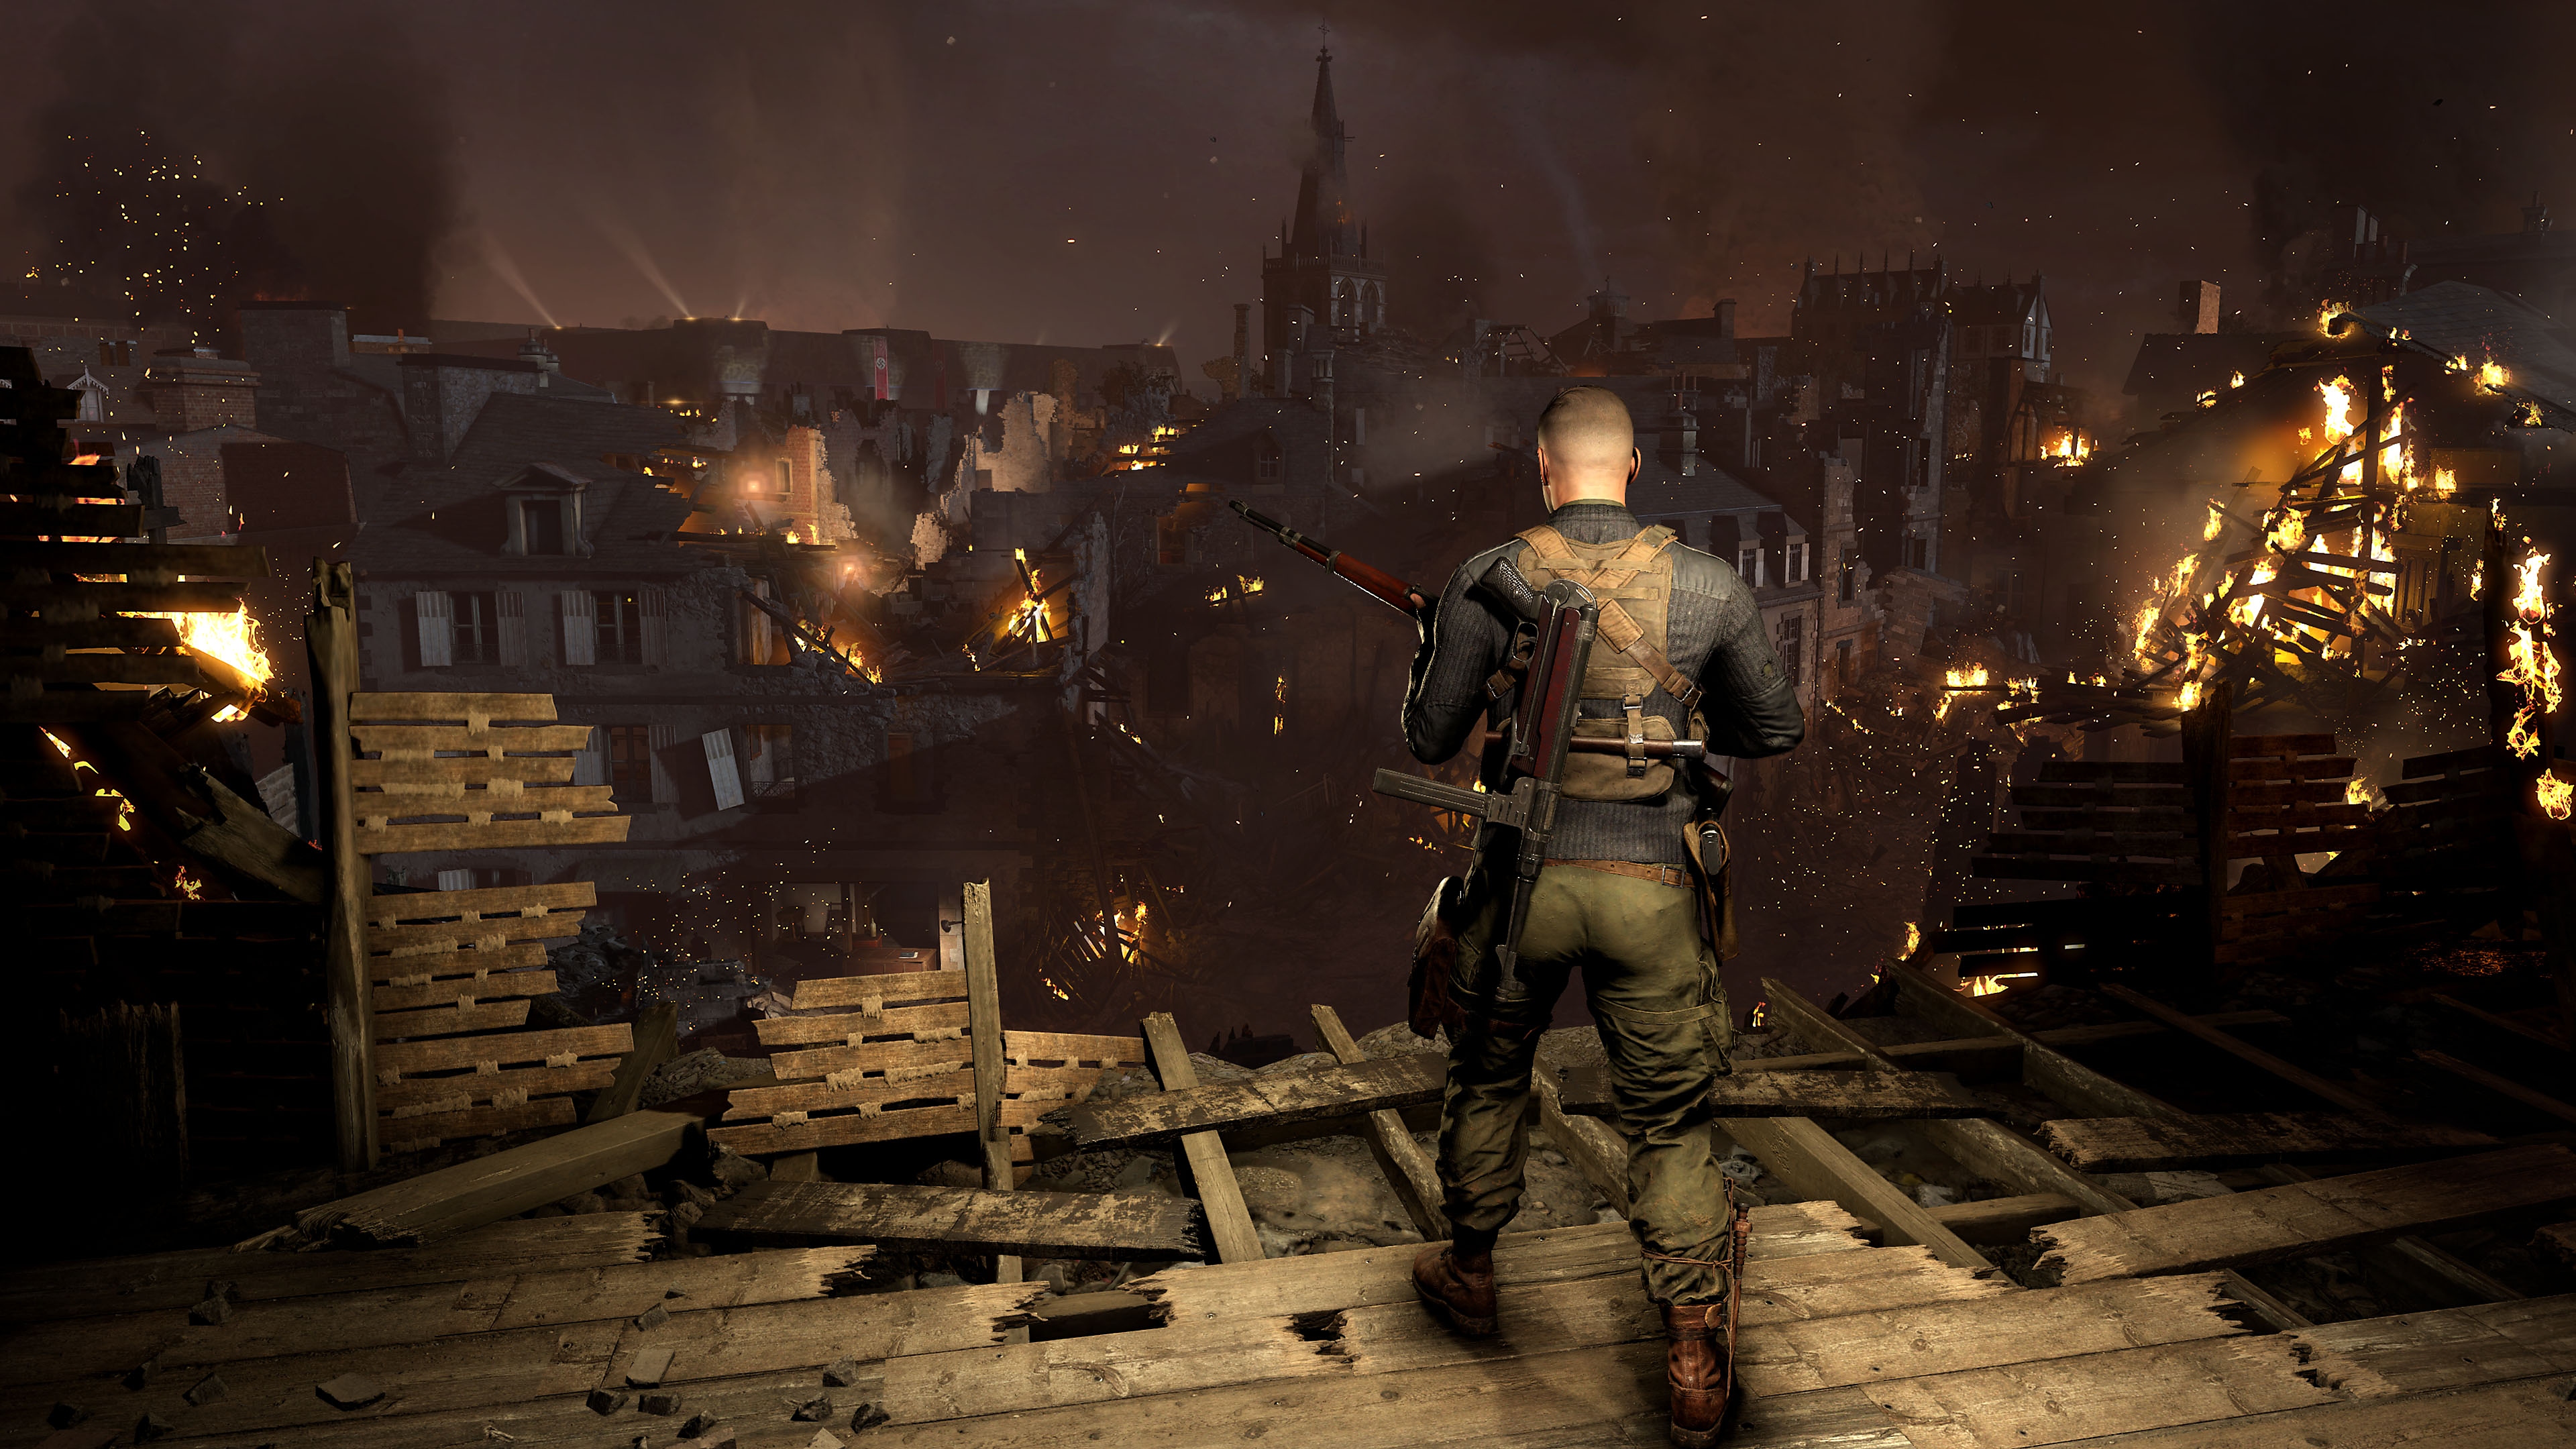 Screenshot van Sniper Elite 5 met daarop een personage dat uitkijkt over een stad die in brand staat